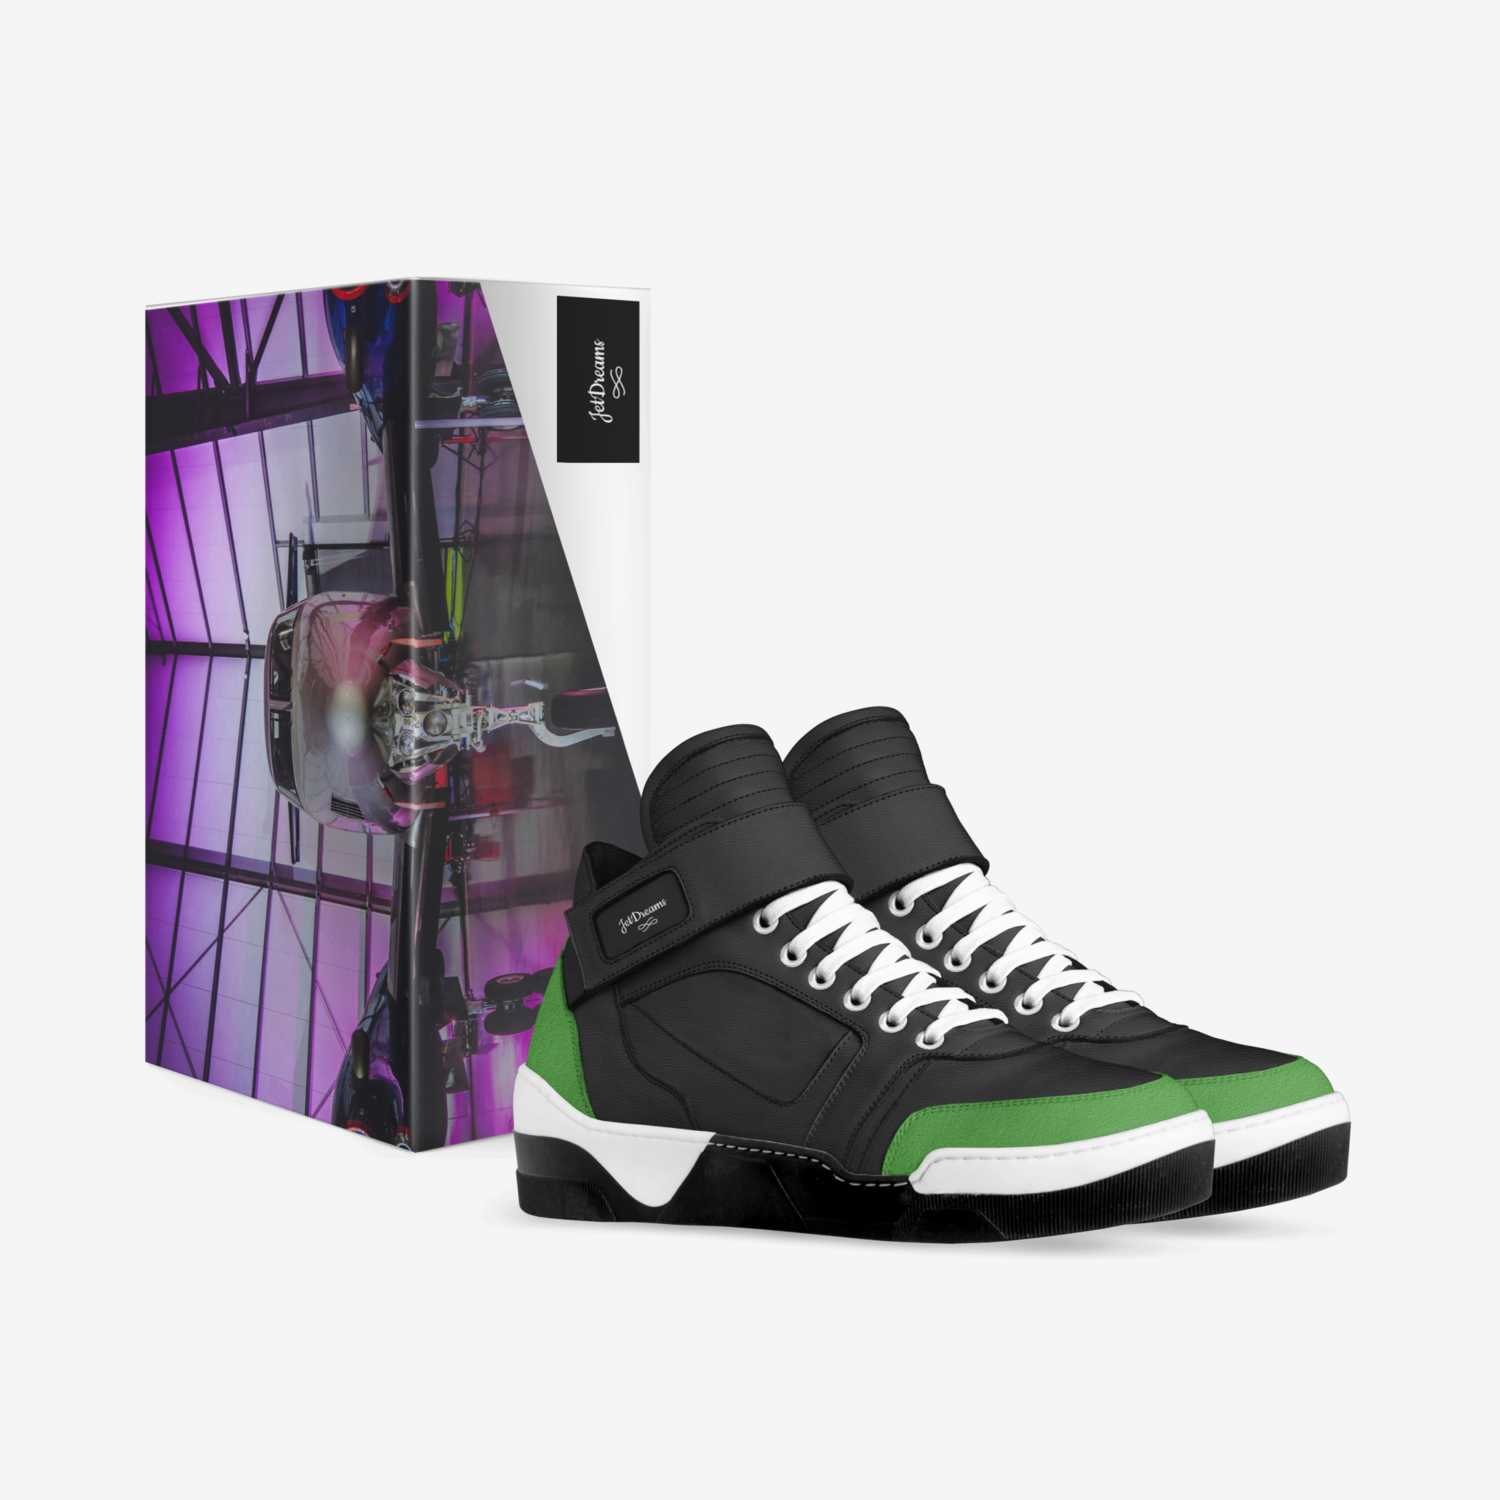 JetDreams custom made in Italy shoes by Laronda Gavin | Box view